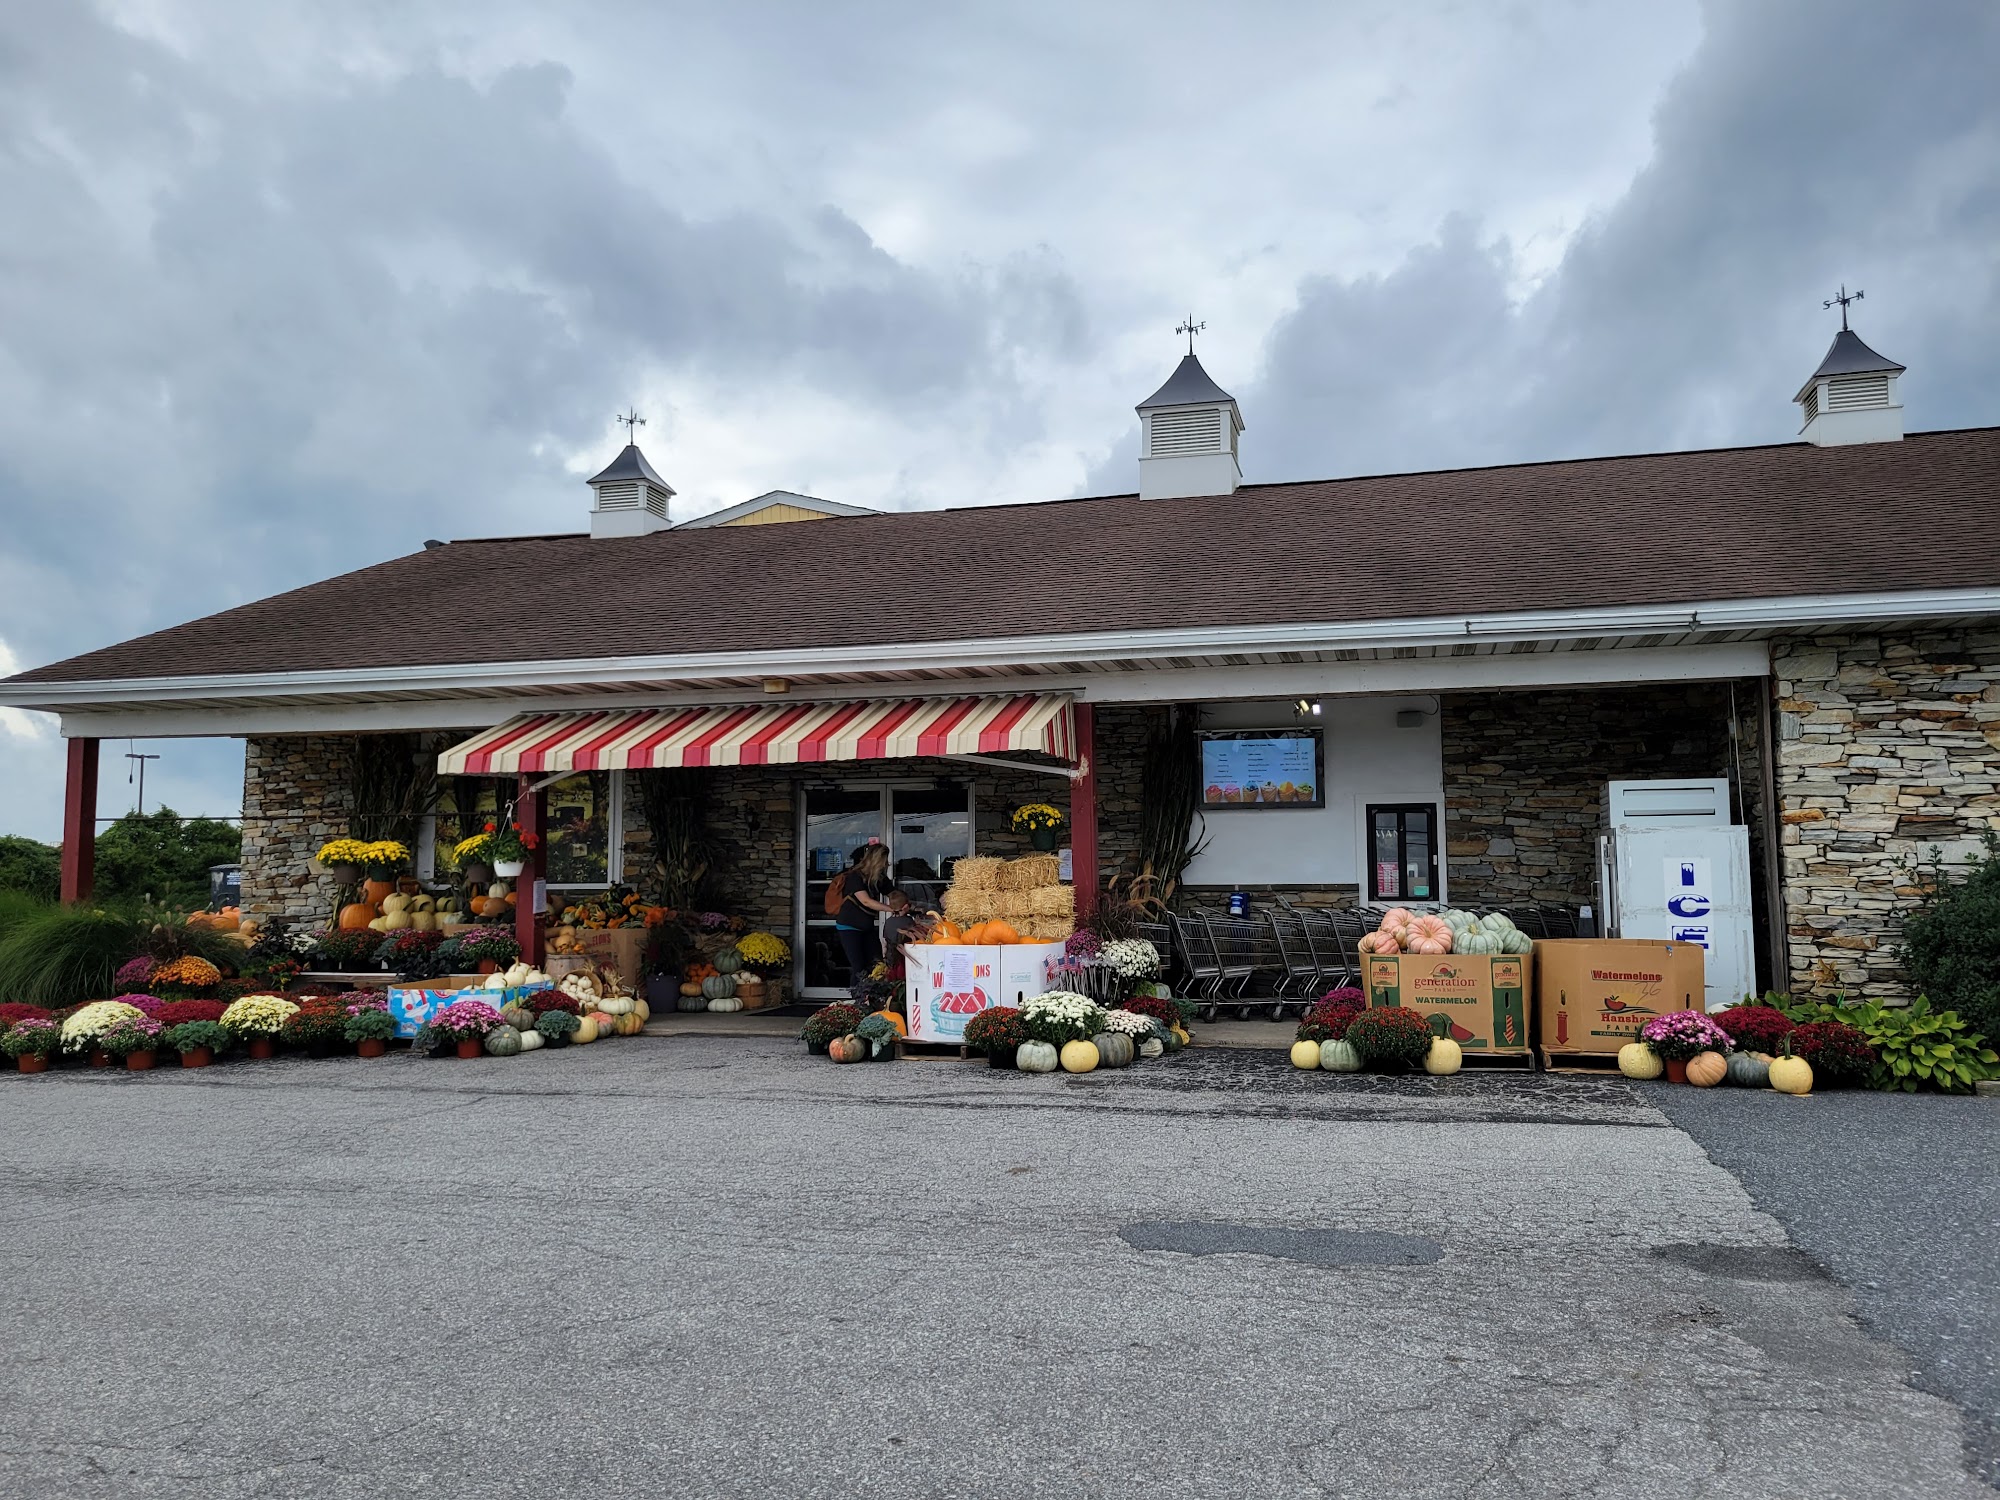 Hershey's Farm Market